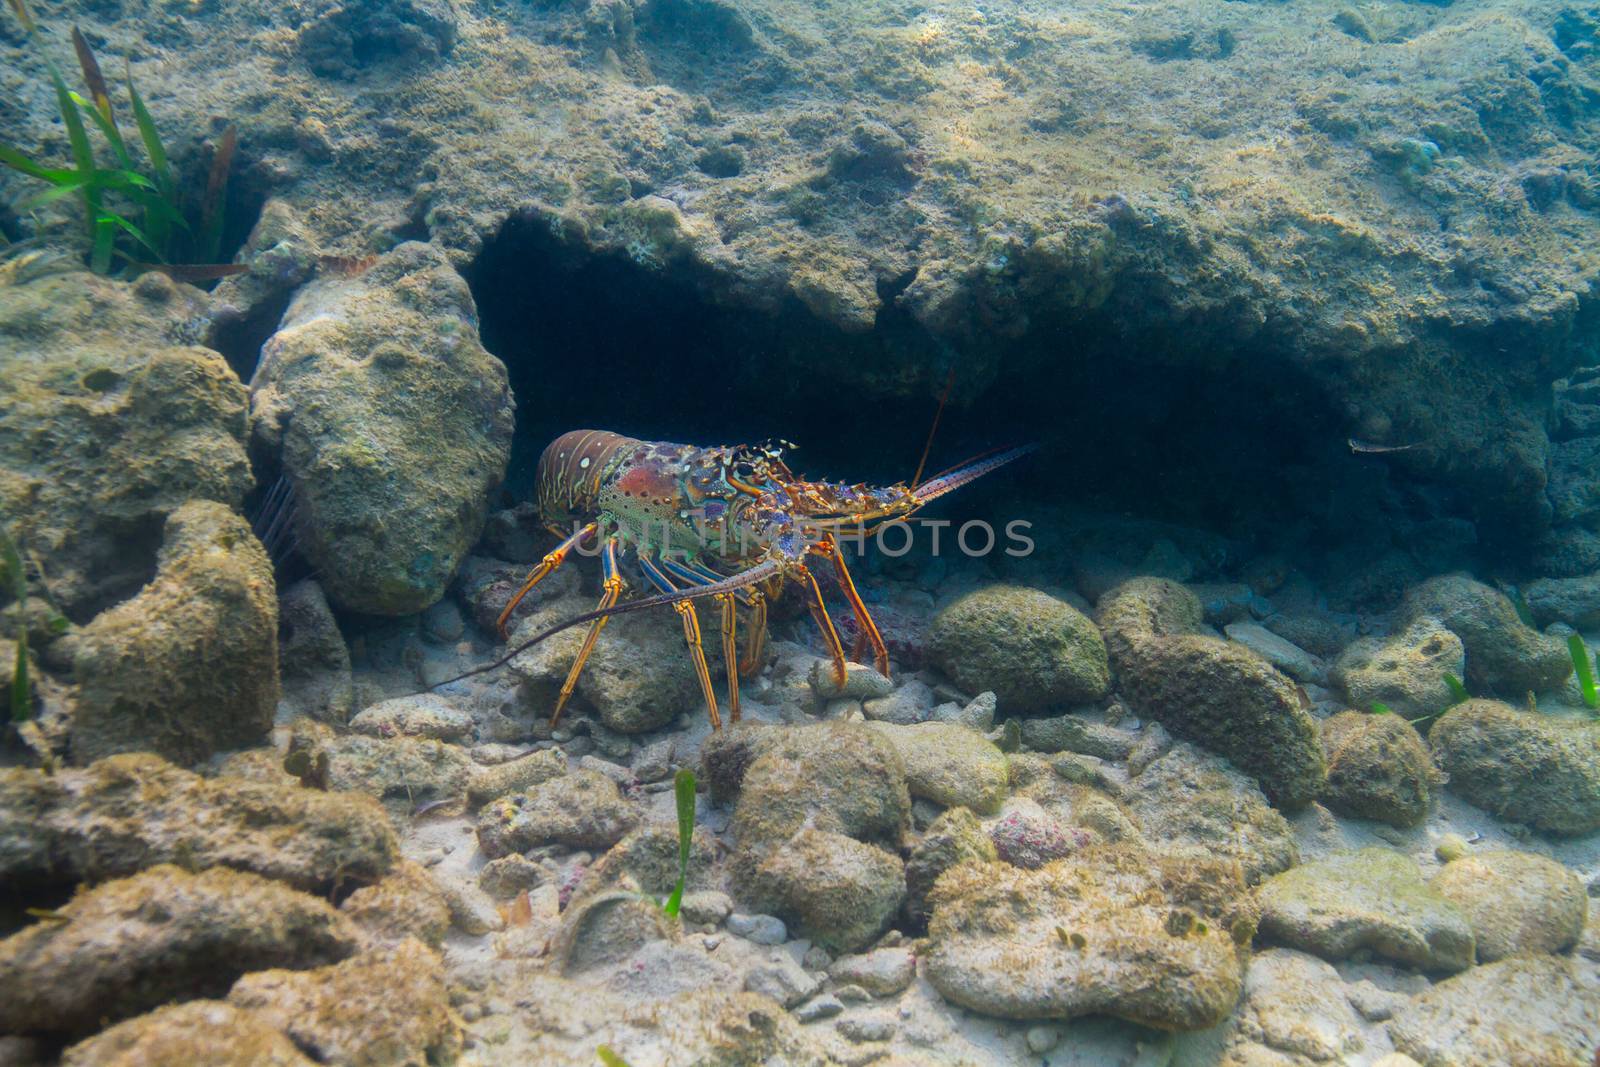 Panulirus argus lobster by mypstudio